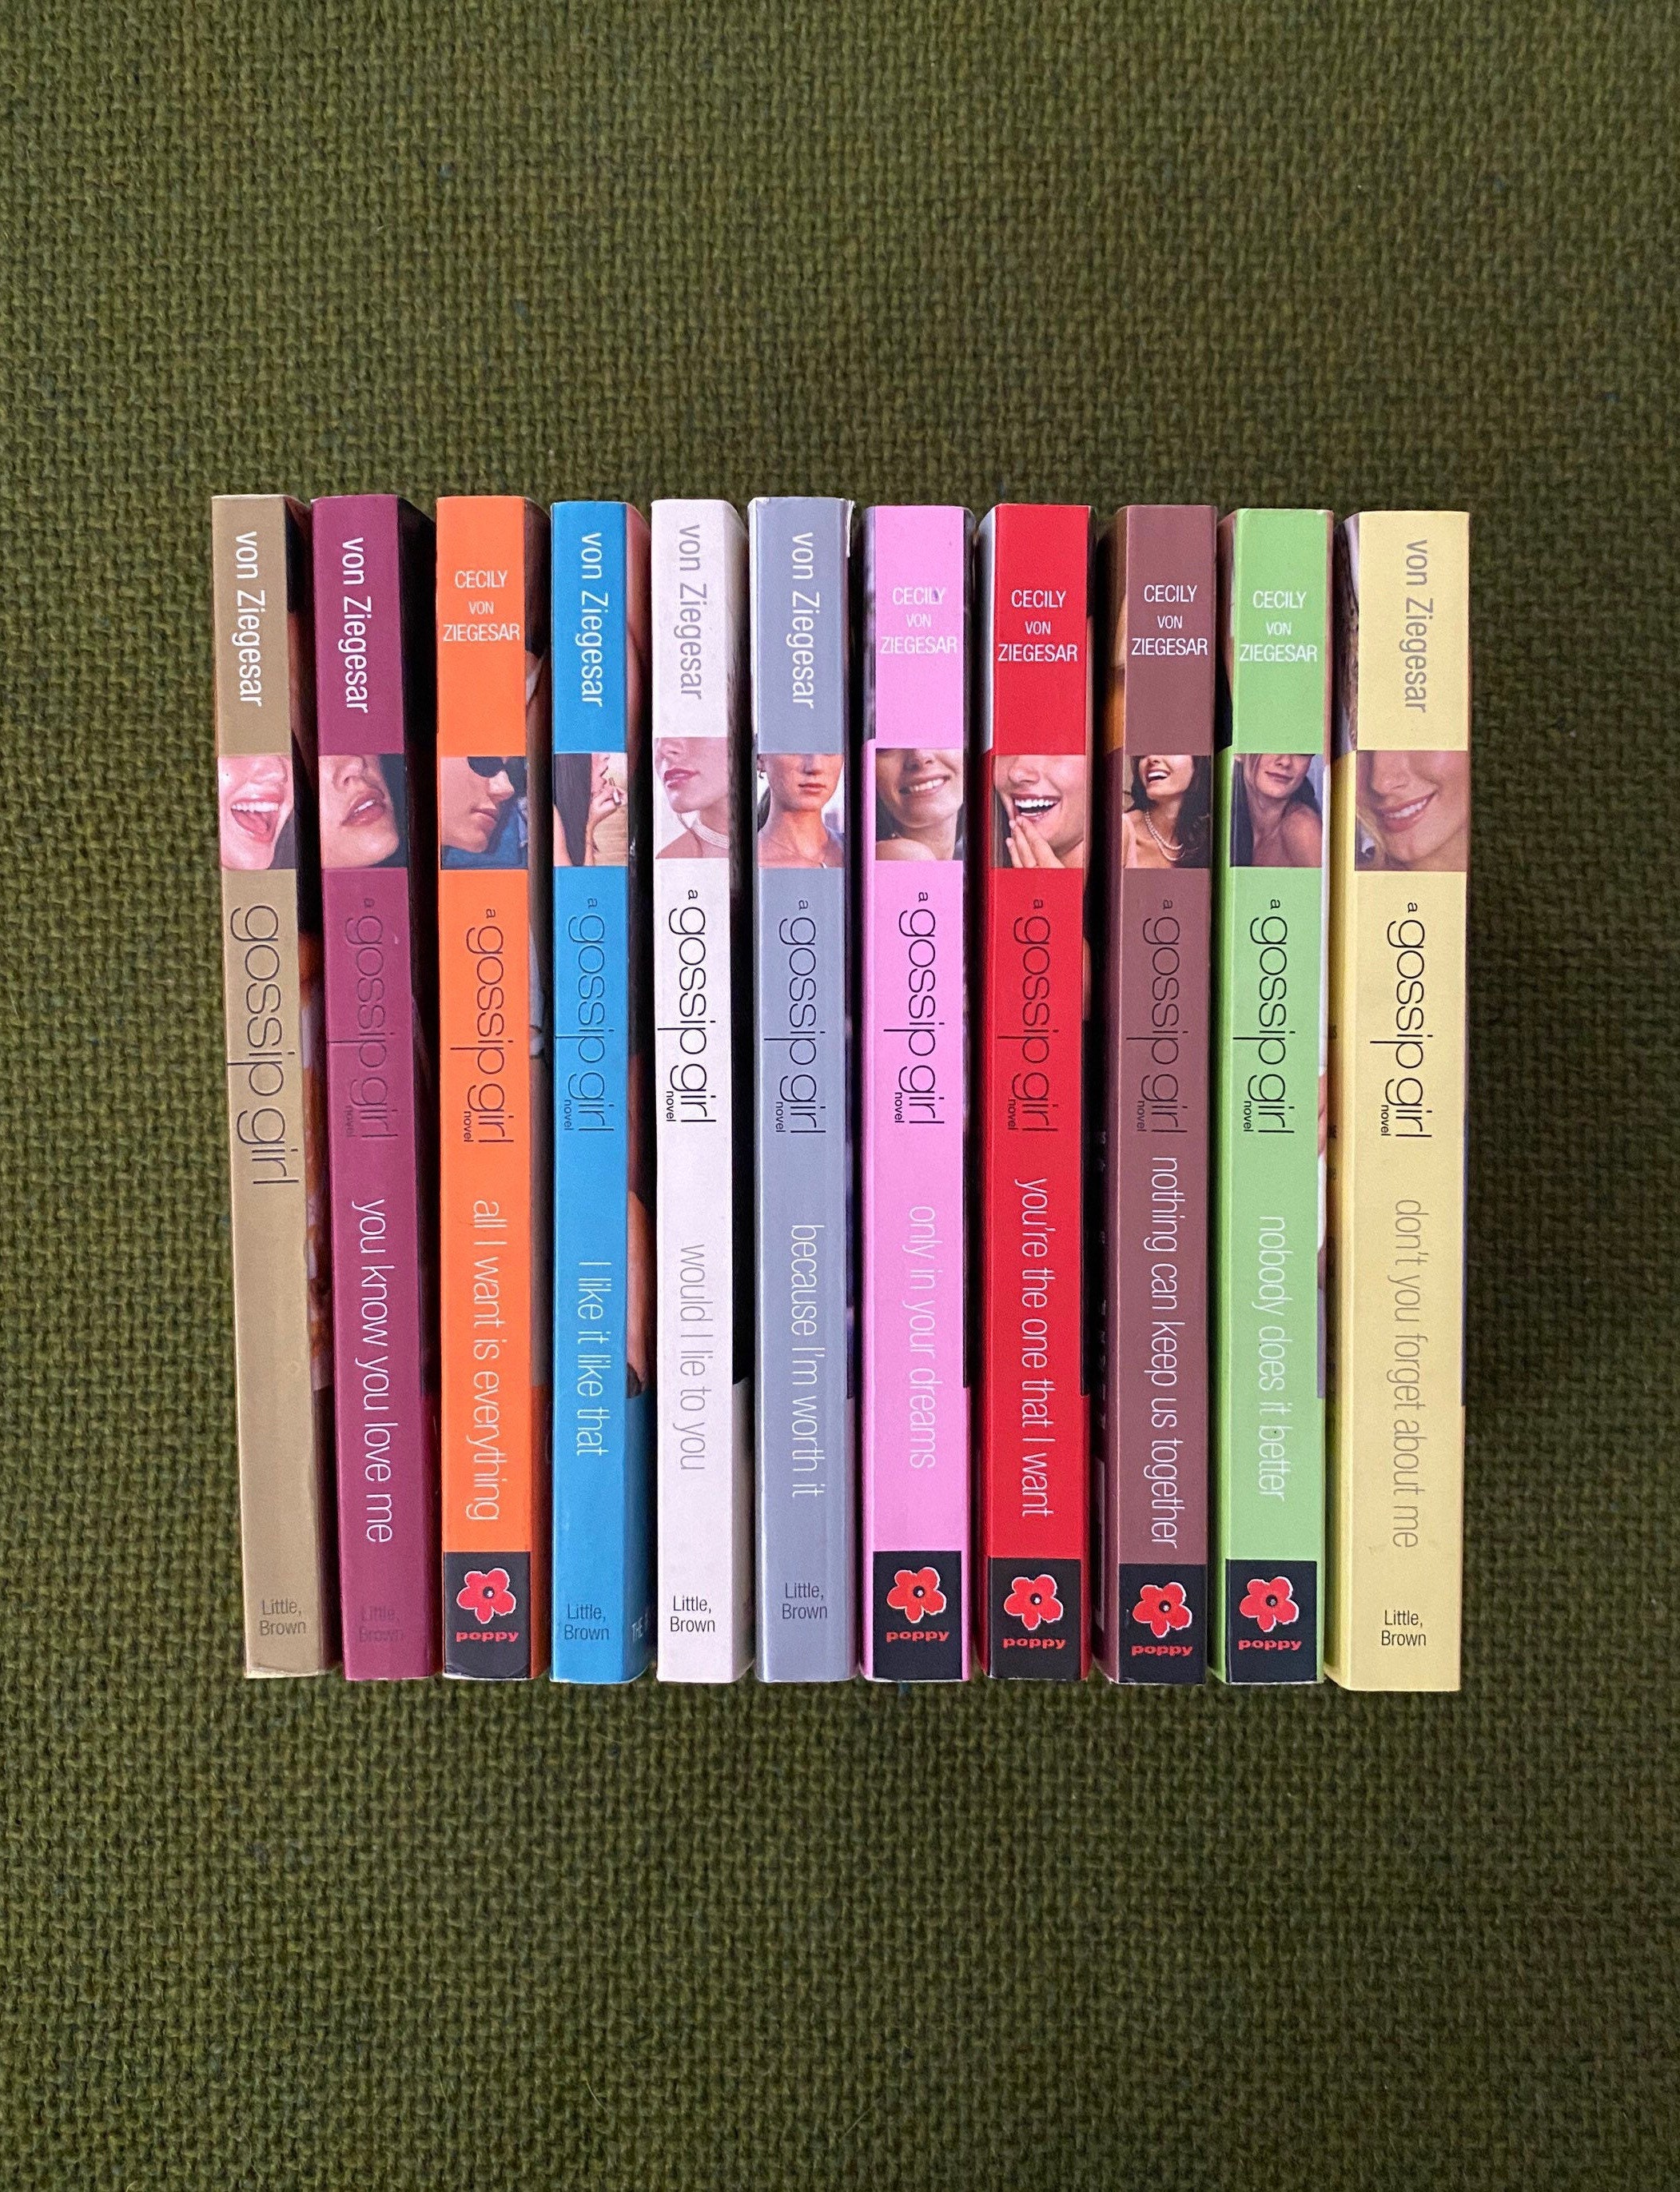 1-11 Gossip Girl Books By. Cecily Von Ziegesar paperbacks 